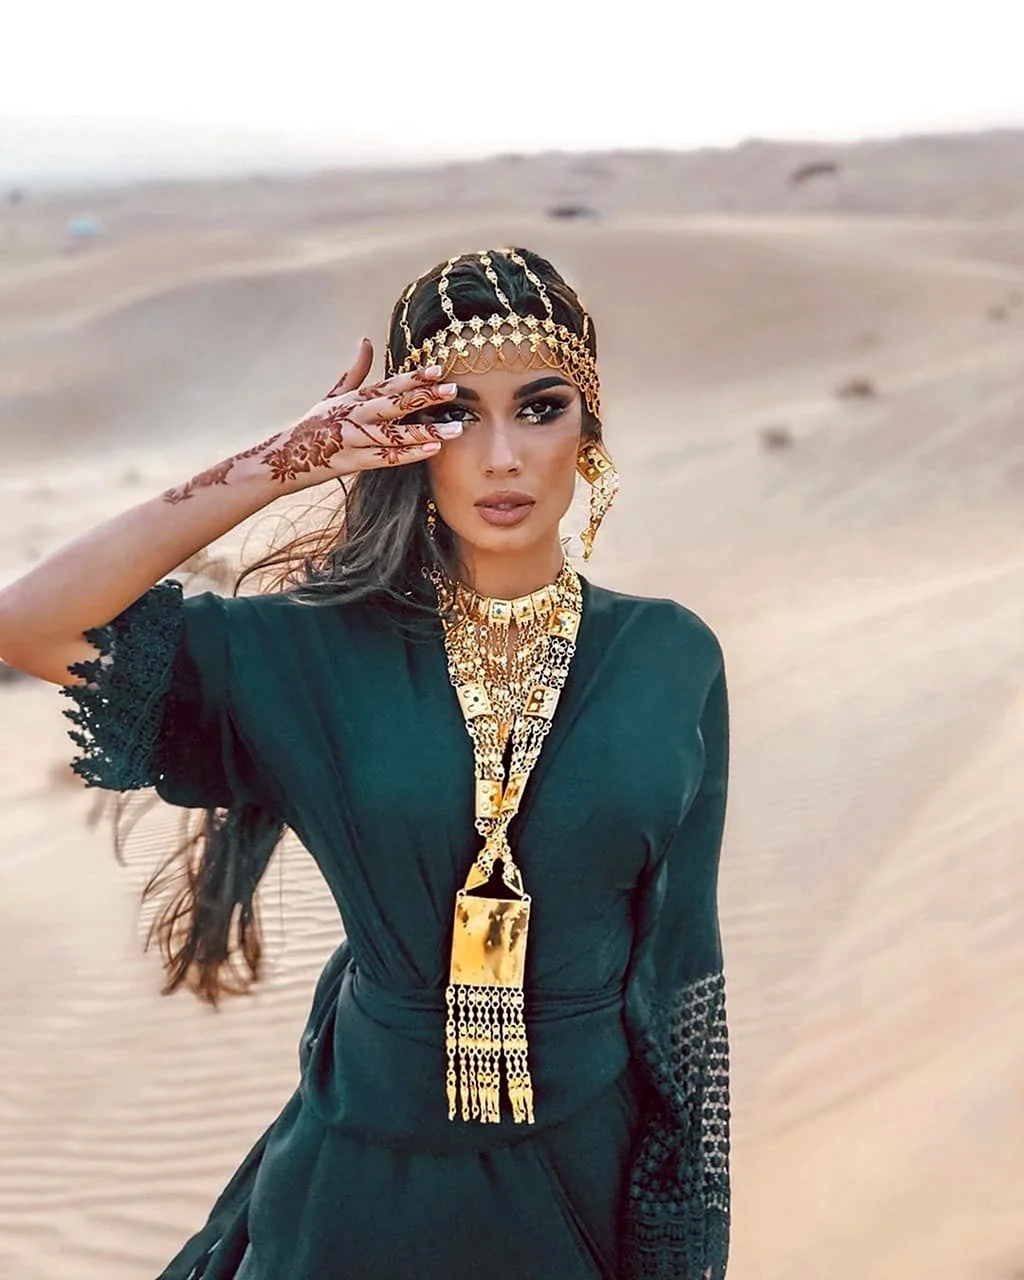 Образ арабской девушки